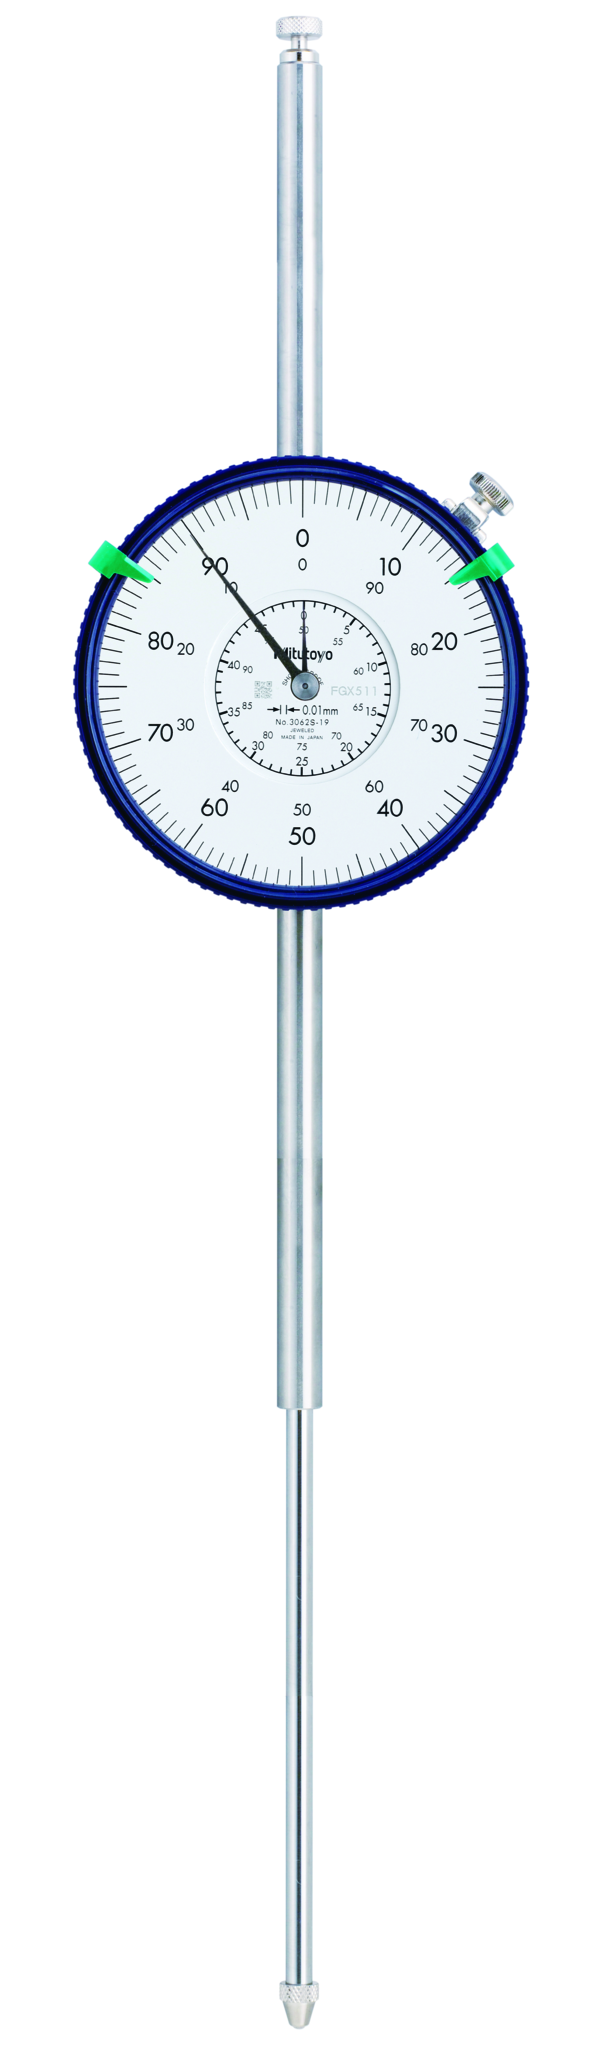 Číselníkový úchylkoměr Mitutoyo 0-100/0,01 mm, průměr 78 mm